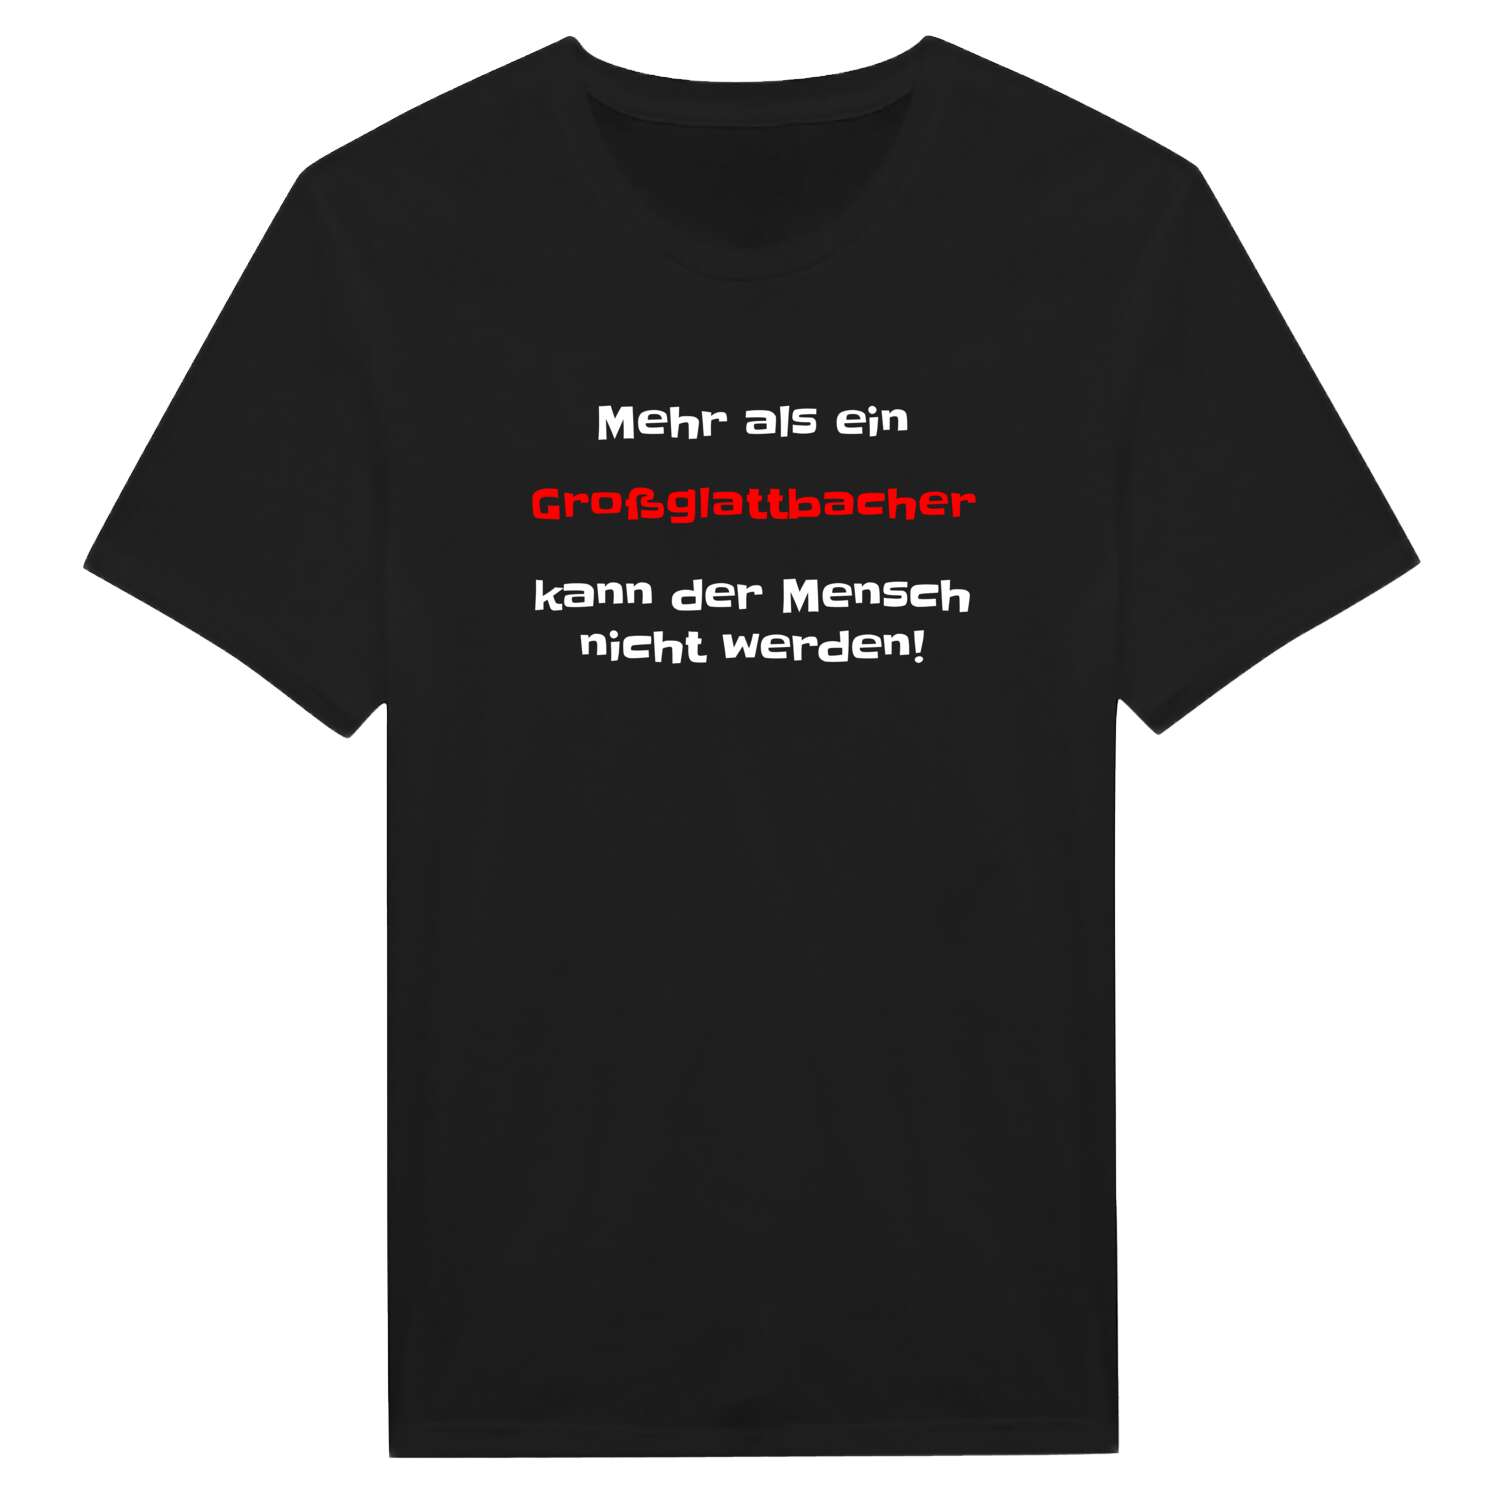 Großglattbach T-Shirt »Mehr als ein«